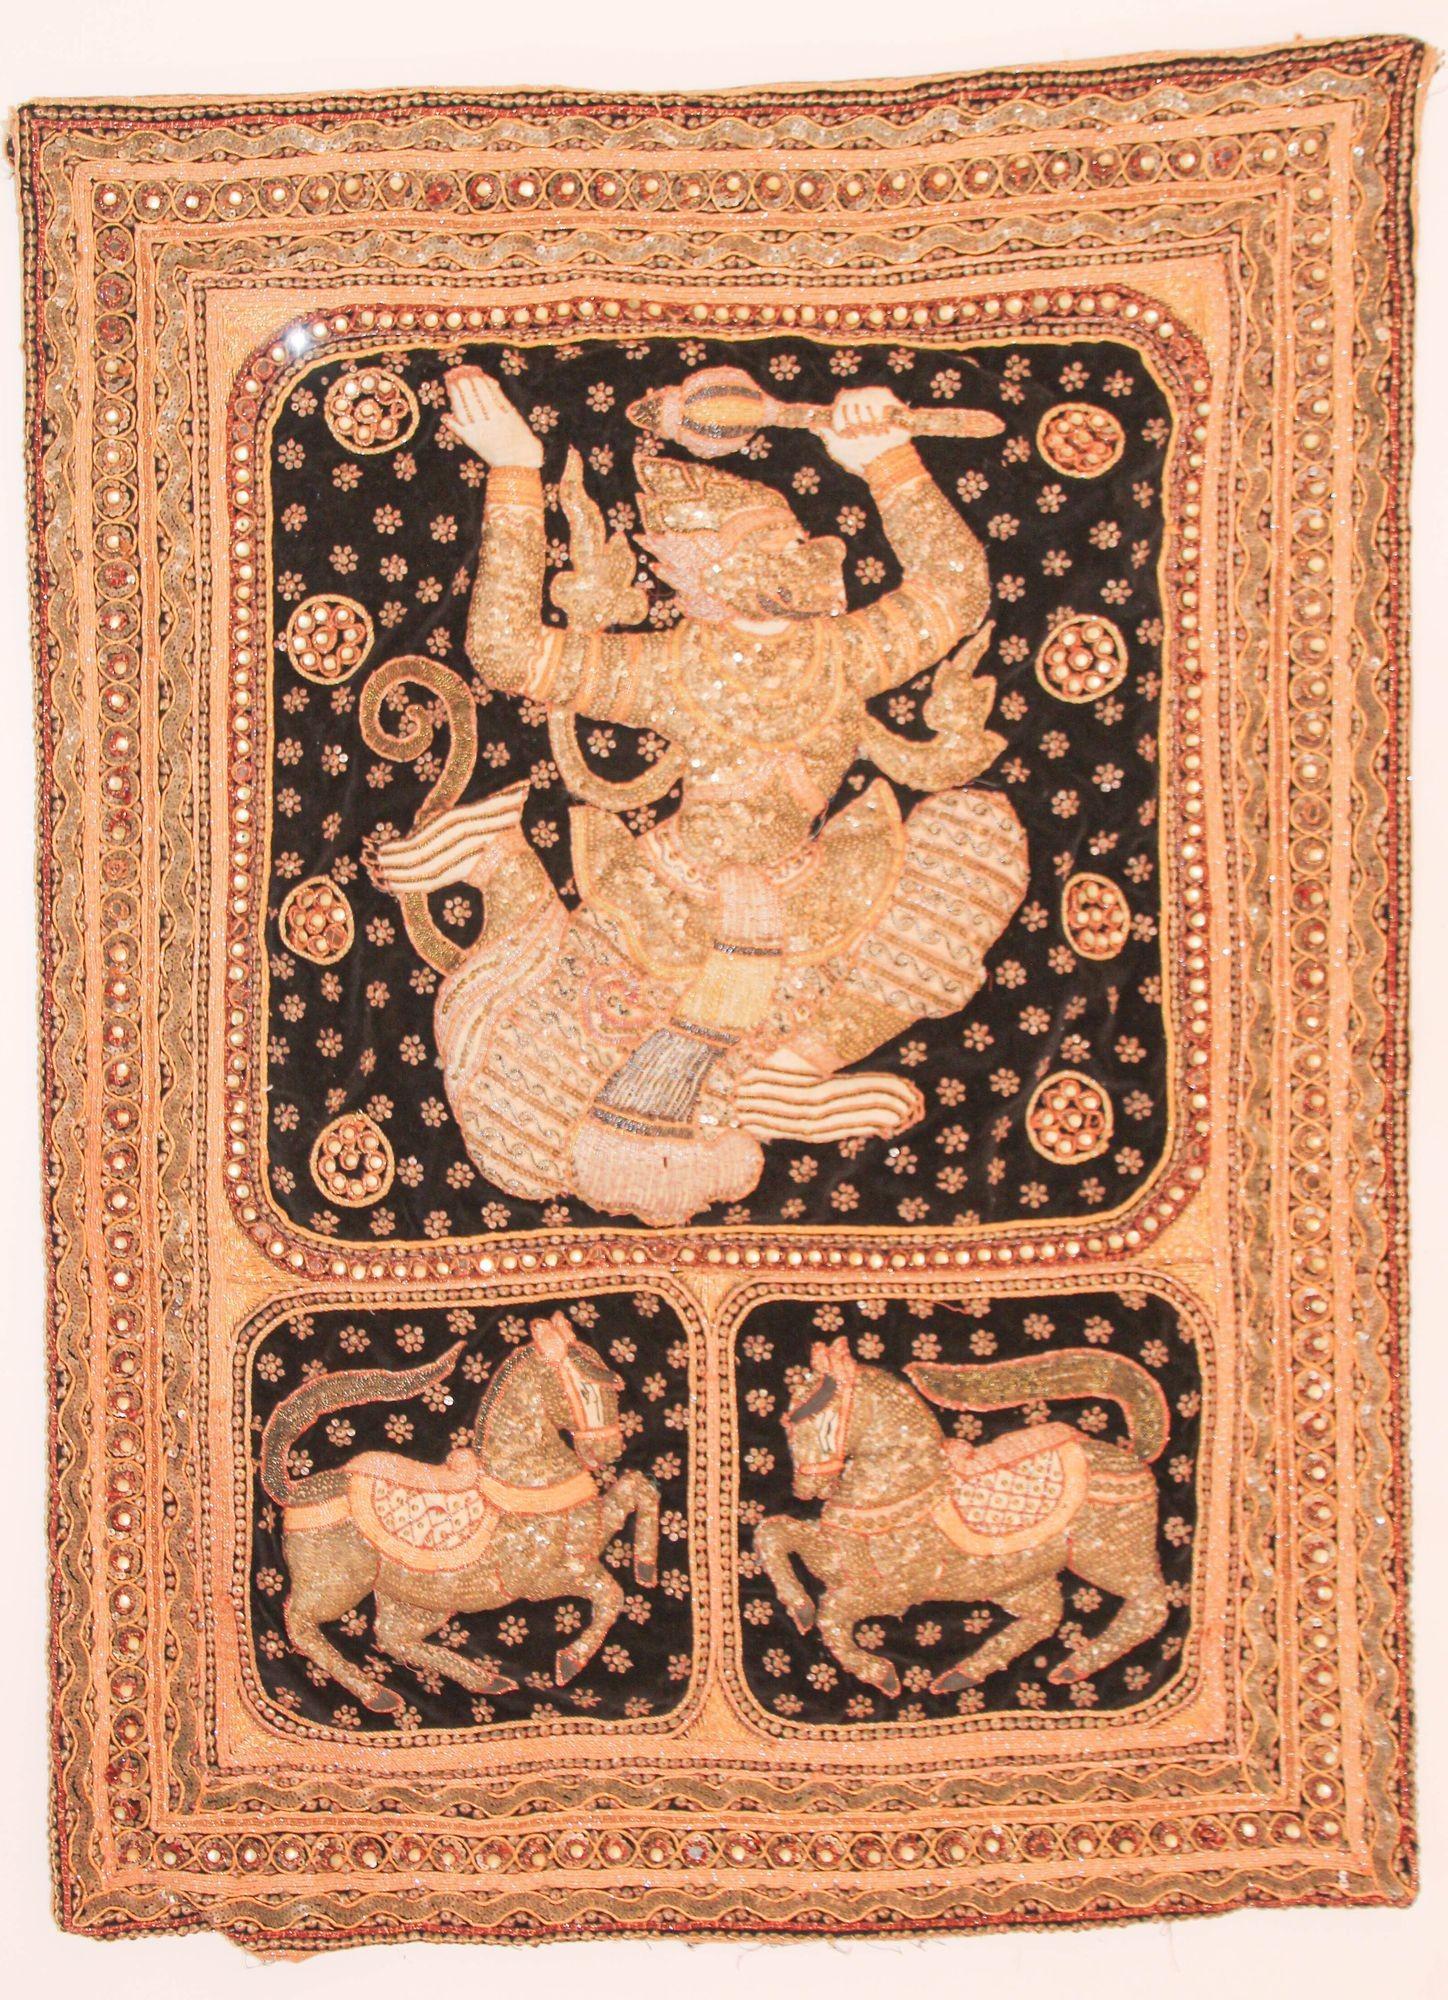 Vintage 1950s Burmese Kalaga Tapestry Pillow Warrior and Horses.
Tapisserie birmane vintage Kalaga, richement détaillée, transformée en housse de coussin. Ajoutez un insert pour l'utiliser comme coussin ou accrochez-la comme tapisserie